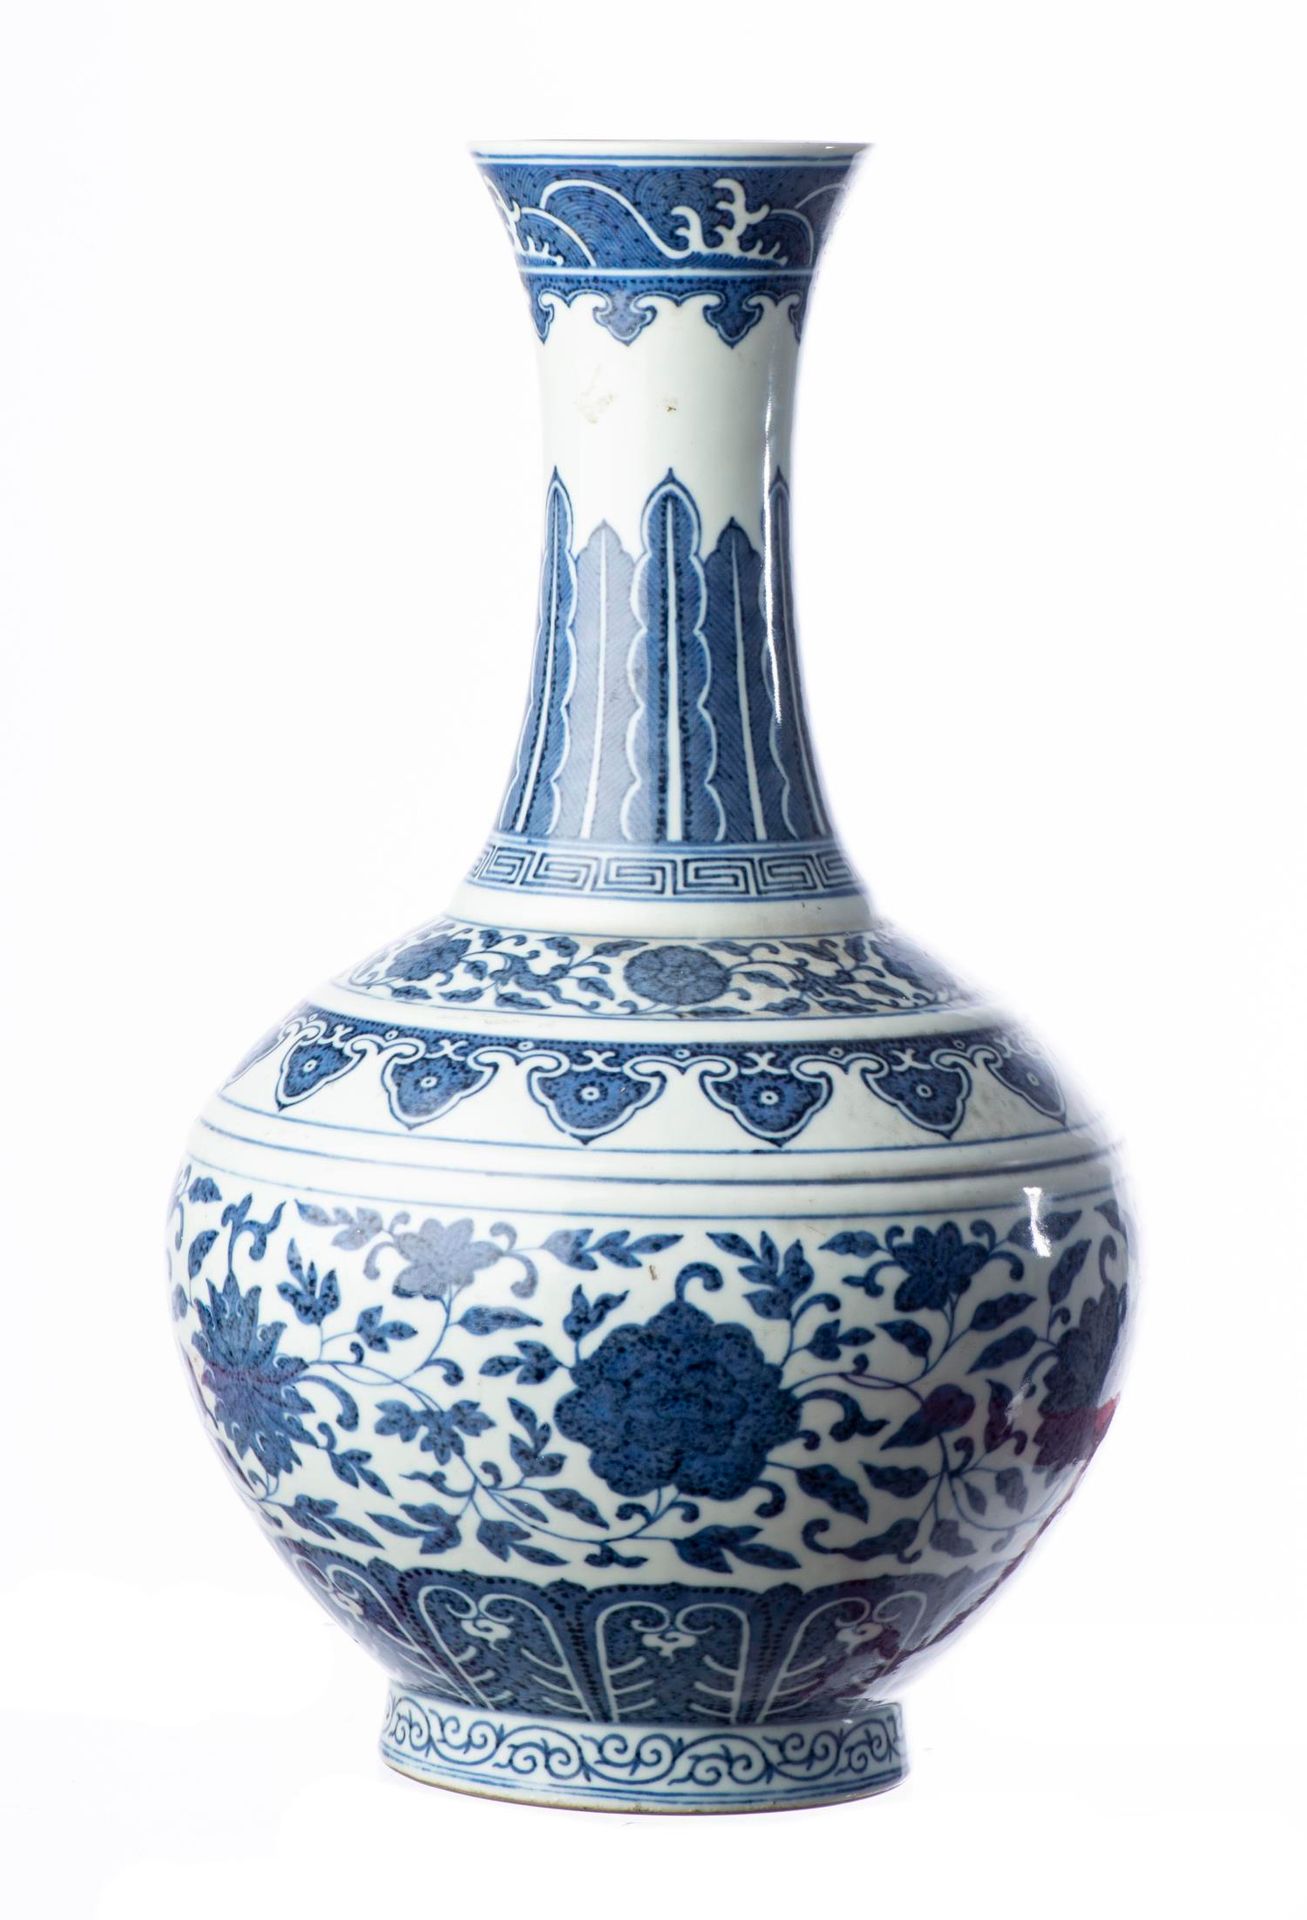 Null 中国，晚清。一件中国皇家瓷器瓶（官方器物），以青花装饰，球状的瓶身在中央横纹上绘有六种不同的花头，包括一朵莲花、一朵牡丹、一朵菊花和一朵茶花，脚下有一&hellip;